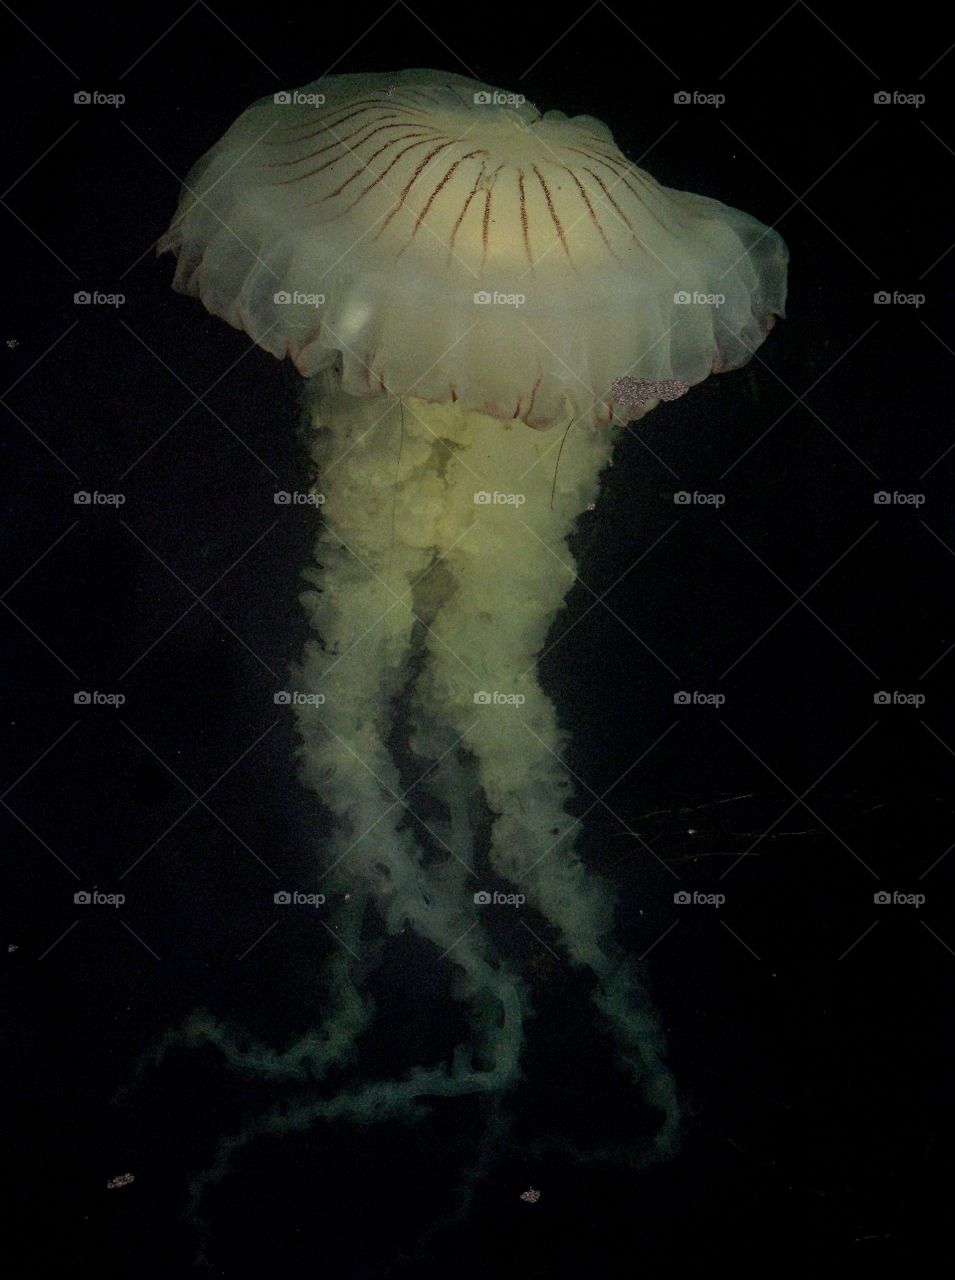 White jellyfish 1meter